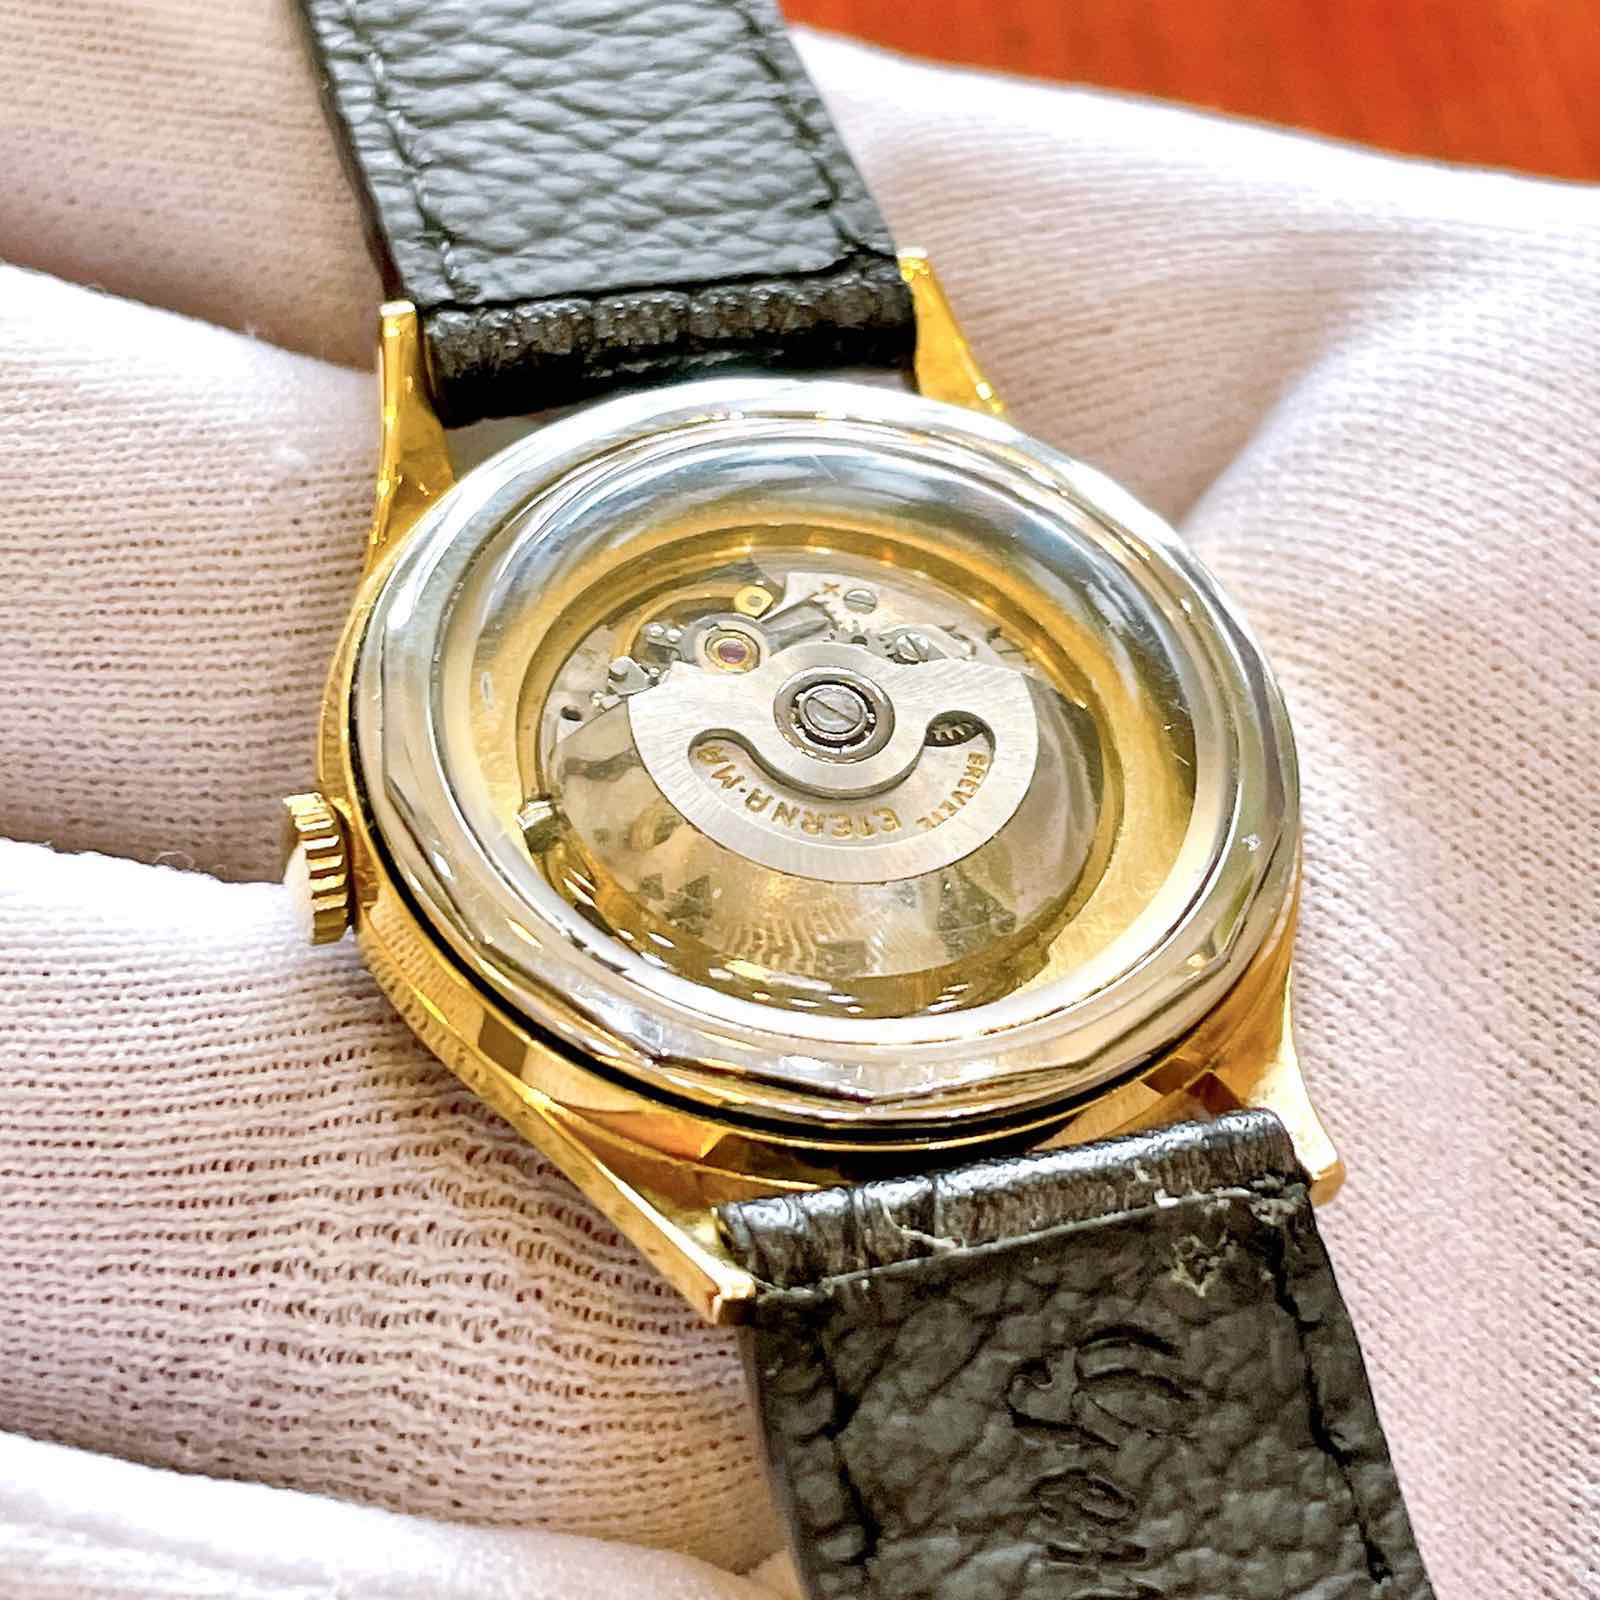 Đồng hồ ETERNA MATIC top thương hiệu đồng hồ nổi tiếng nhất Thuỵ Sỹ